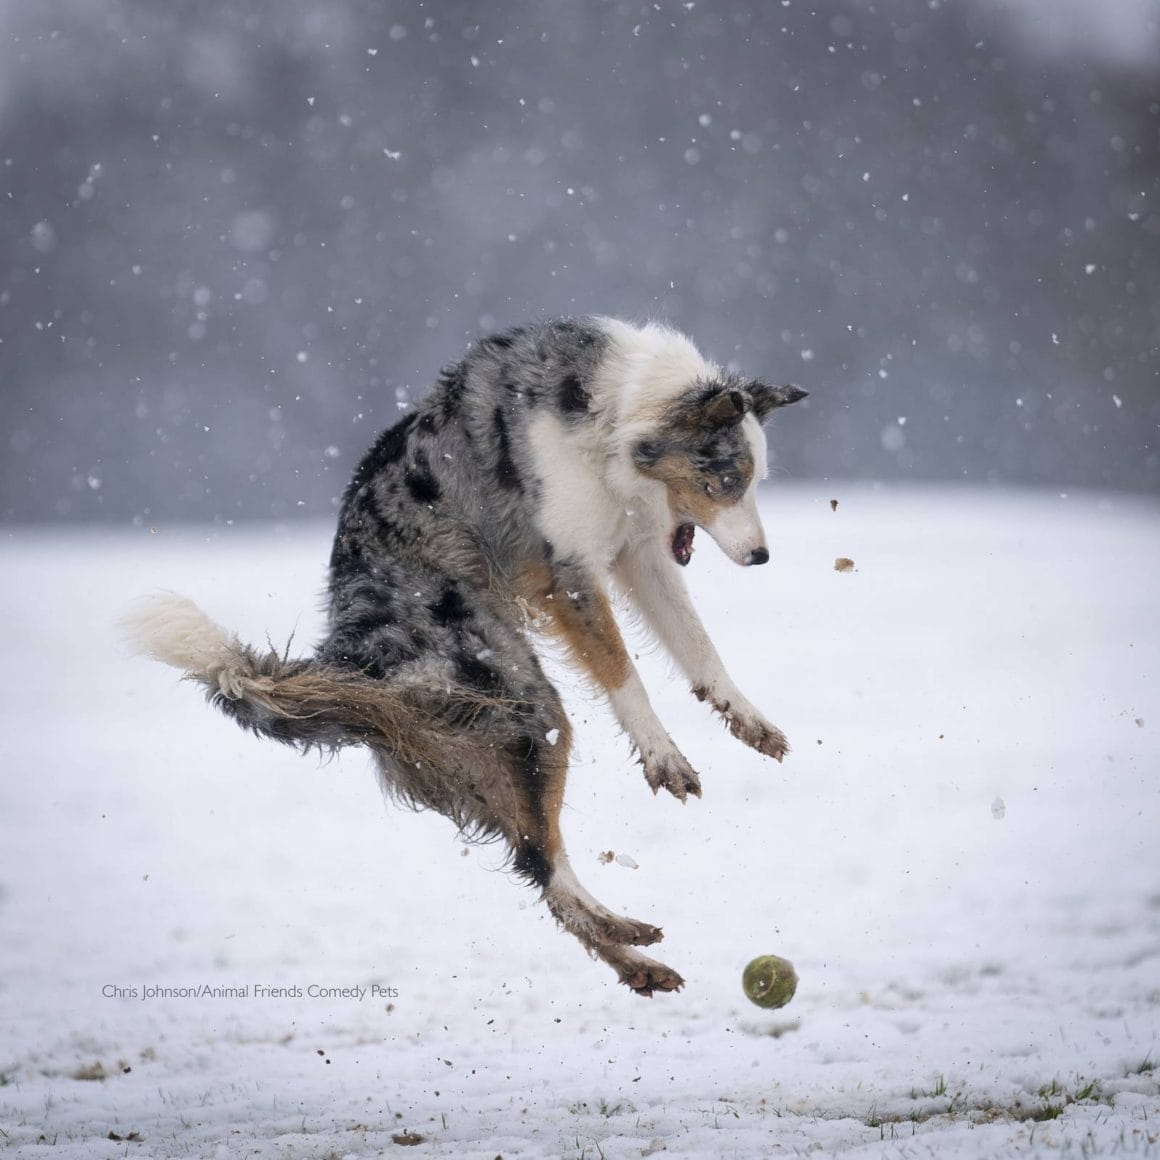 Un chien est prêt à bondir sur sa balle les pattes en avant et la gueule grande ouverte. Le tout dans un décor enneigé.